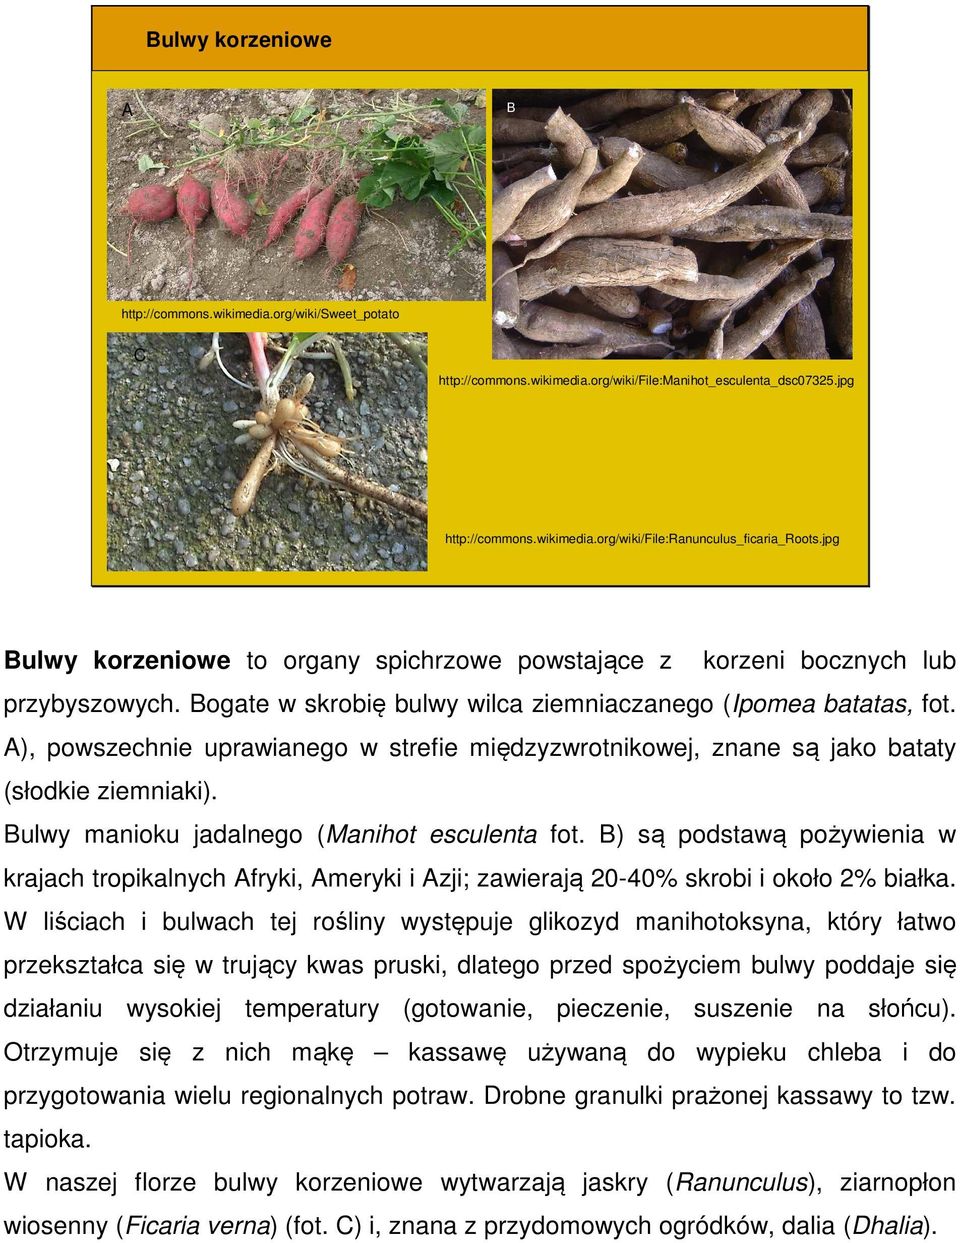 ), powszechnie uprawianego w strefie międzyzwrotnikowej, znane są jako bataty (słodkie ziemniaki). ulwy manioku jadalnego (Manihot esculenta fot.